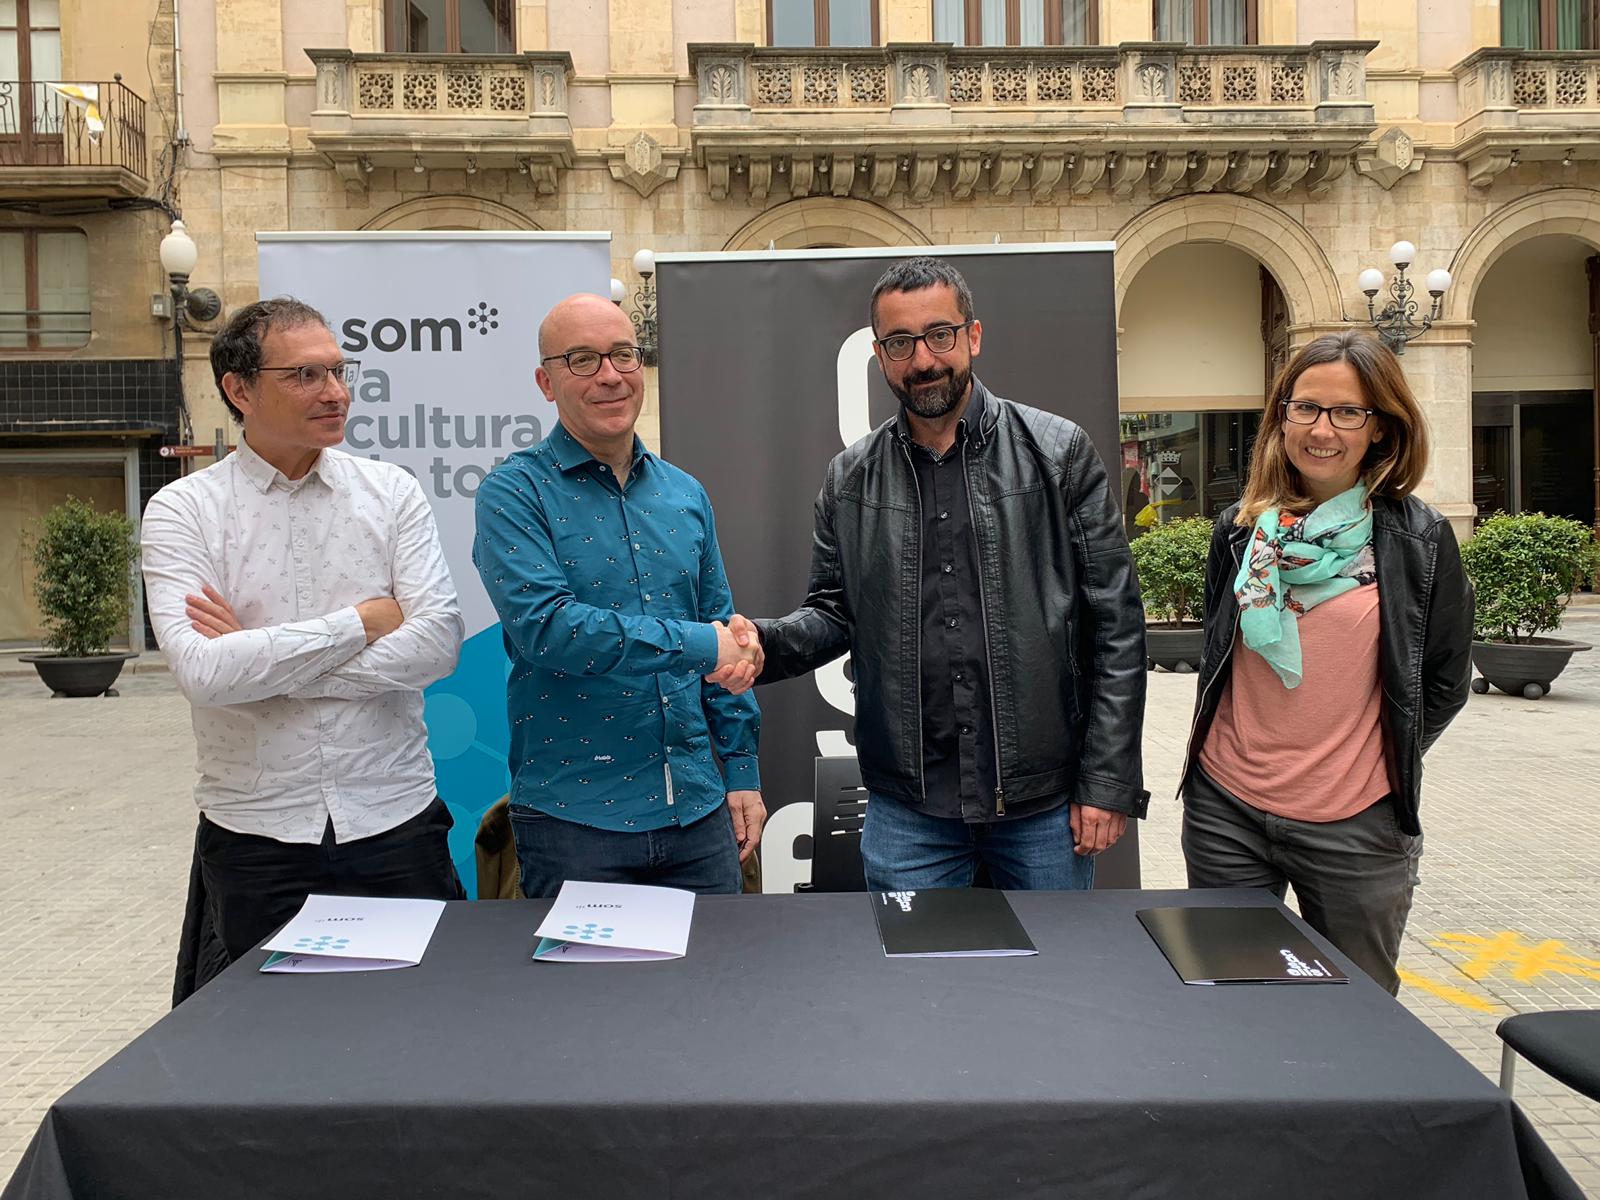 Som* signa un acord amb la Coordinadora de Colles Castelleres de Catalunya per a la difusió de les properes quatre temporades de castells